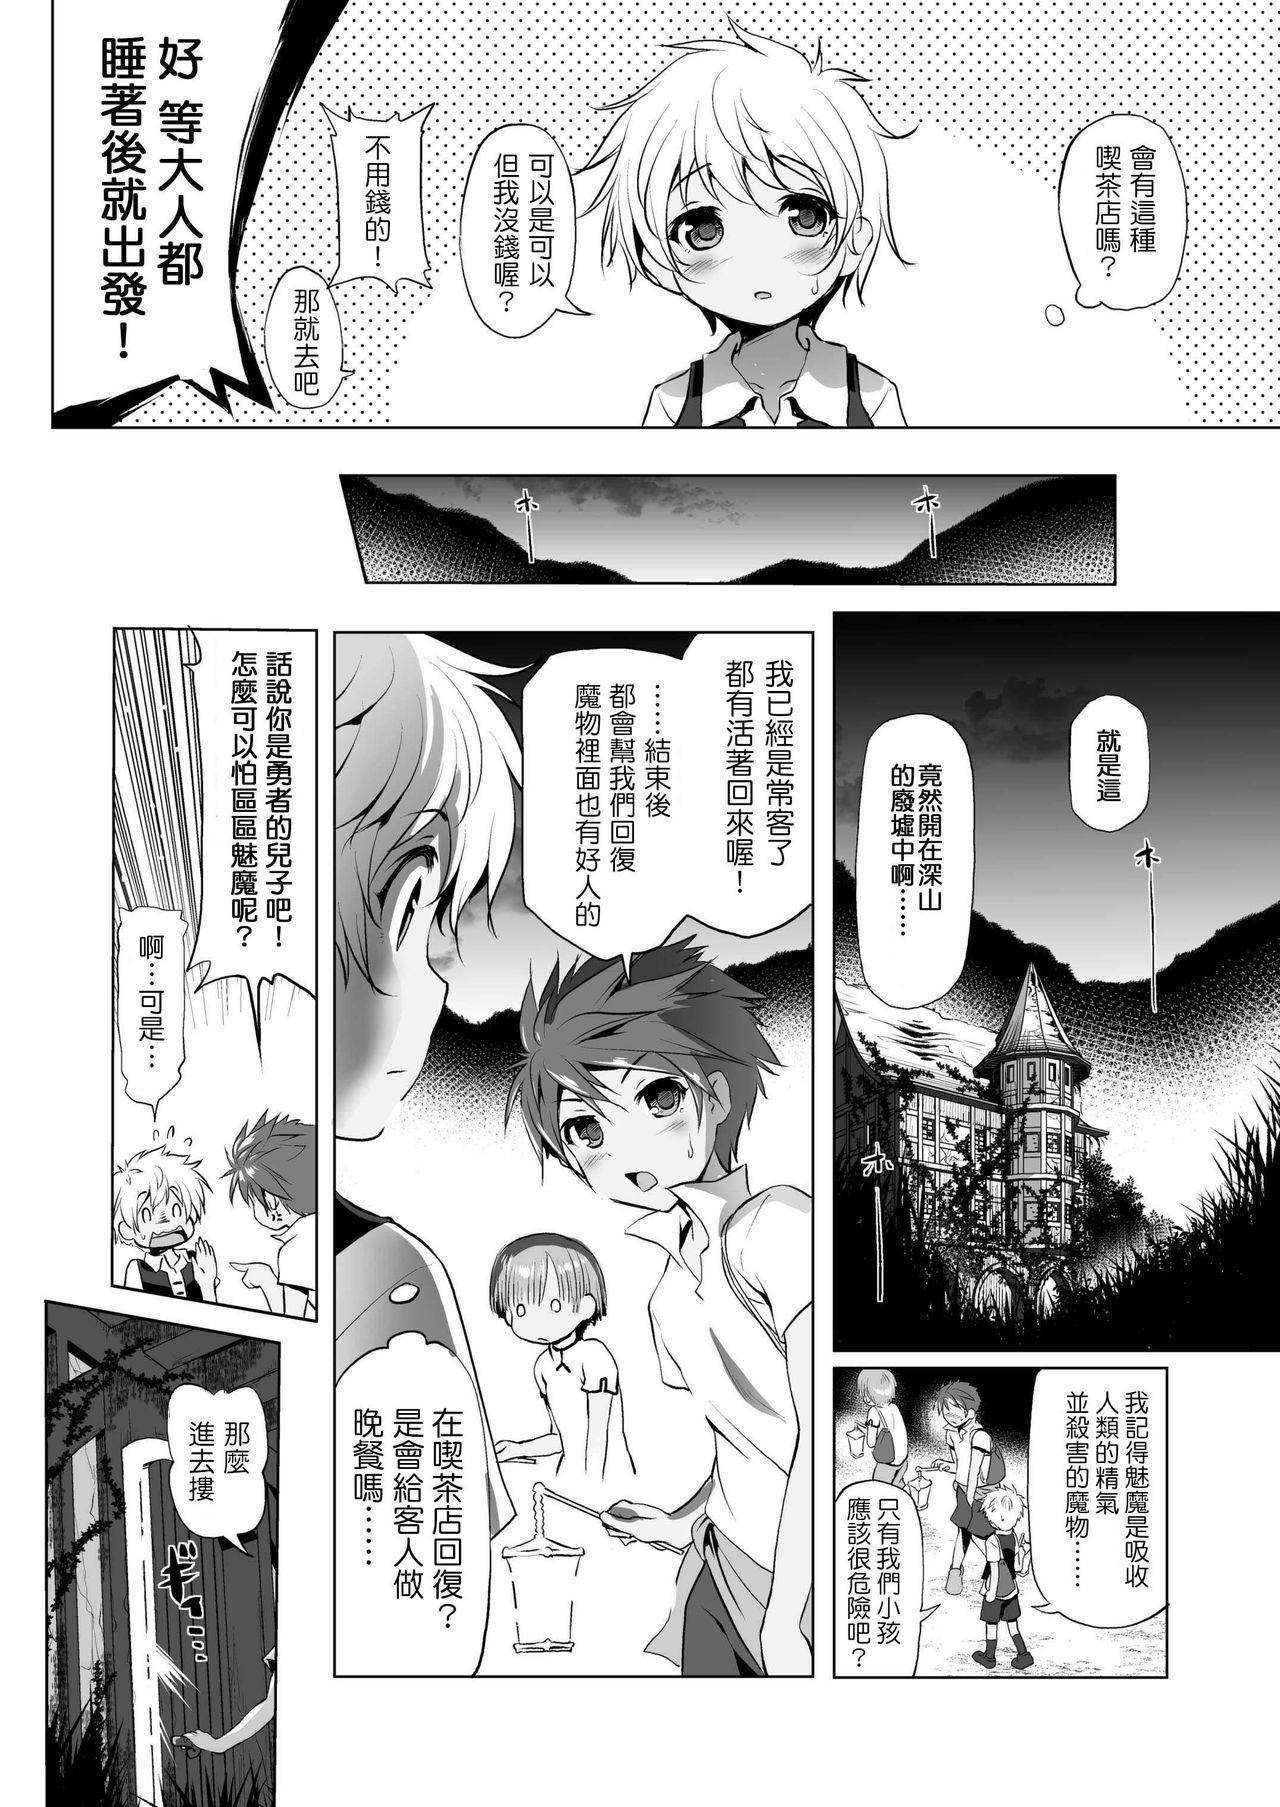 Chubby Makotoni Zannen desu ga Bouken no Sho 1 wa Kiete Shimaimashita. Imvu - Page 7